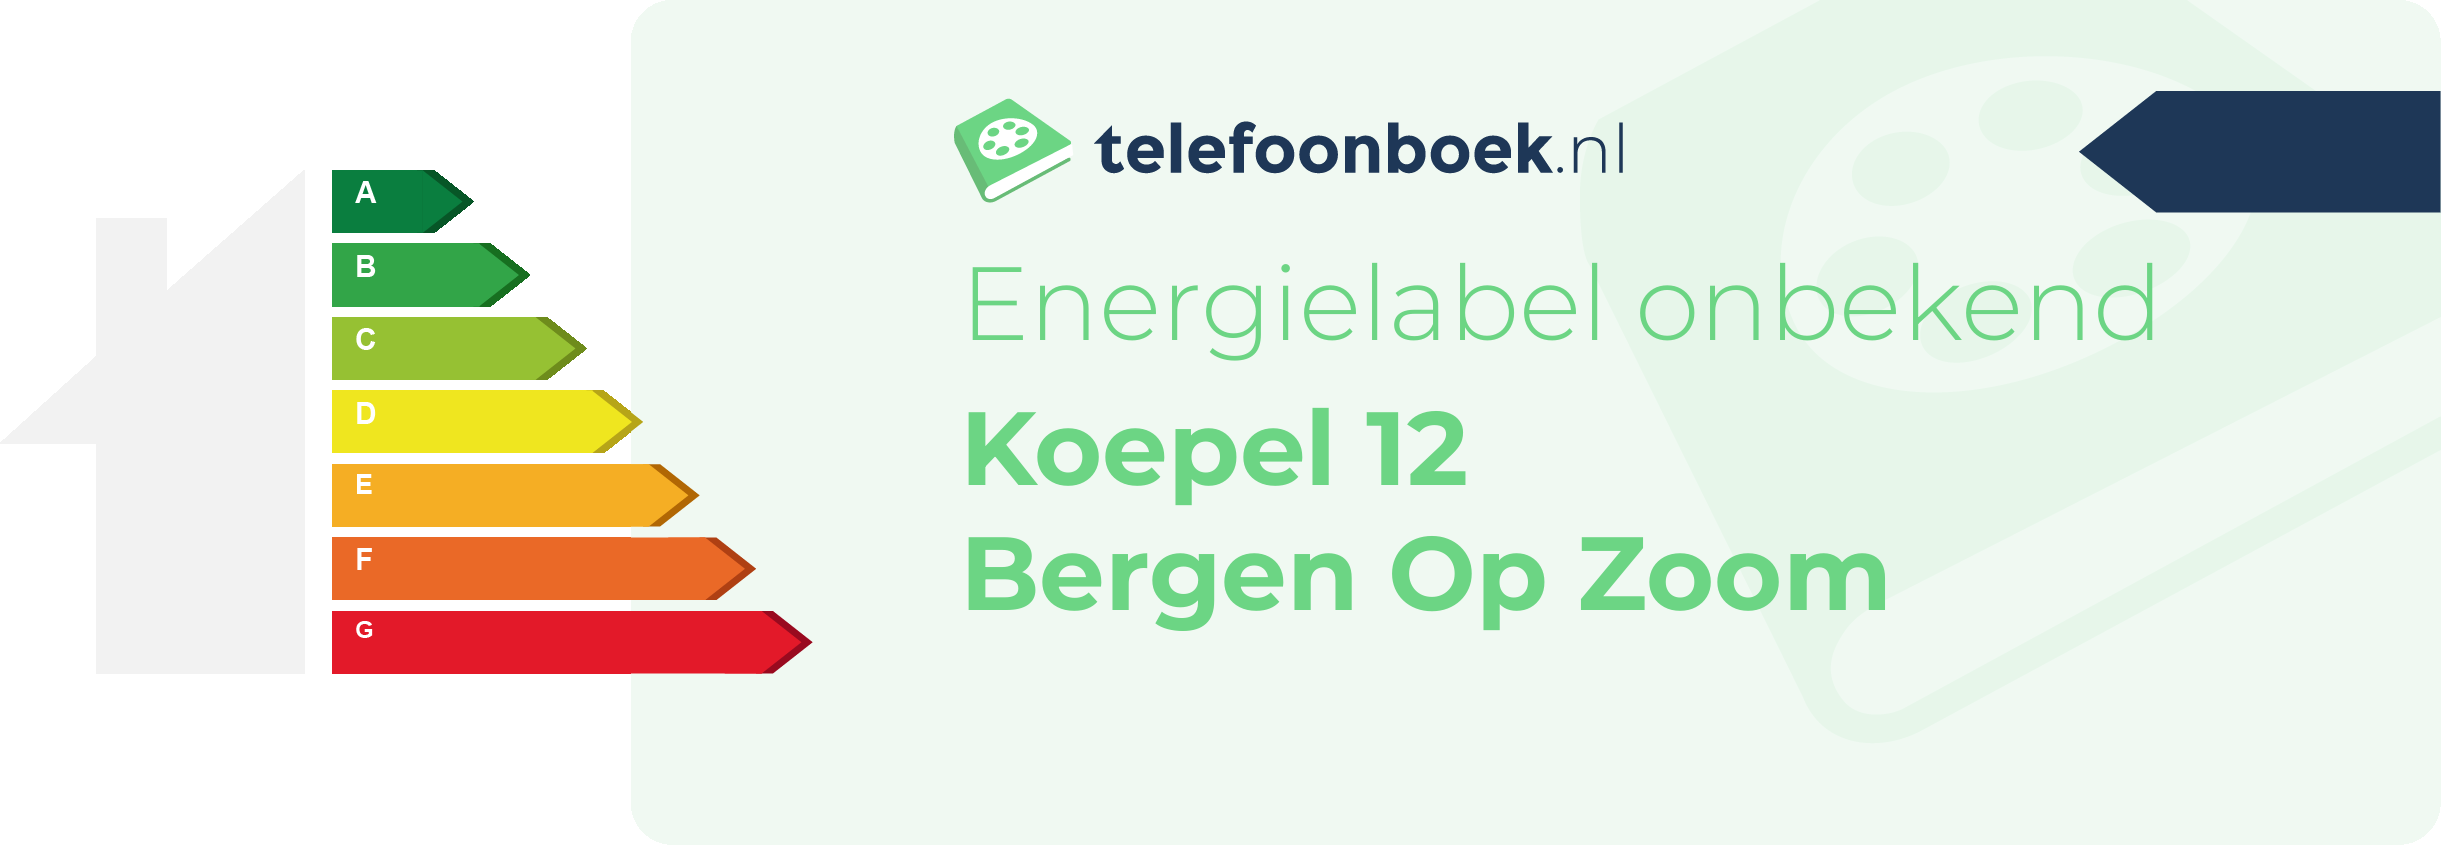 Energielabel Koepel 12 Bergen Op Zoom